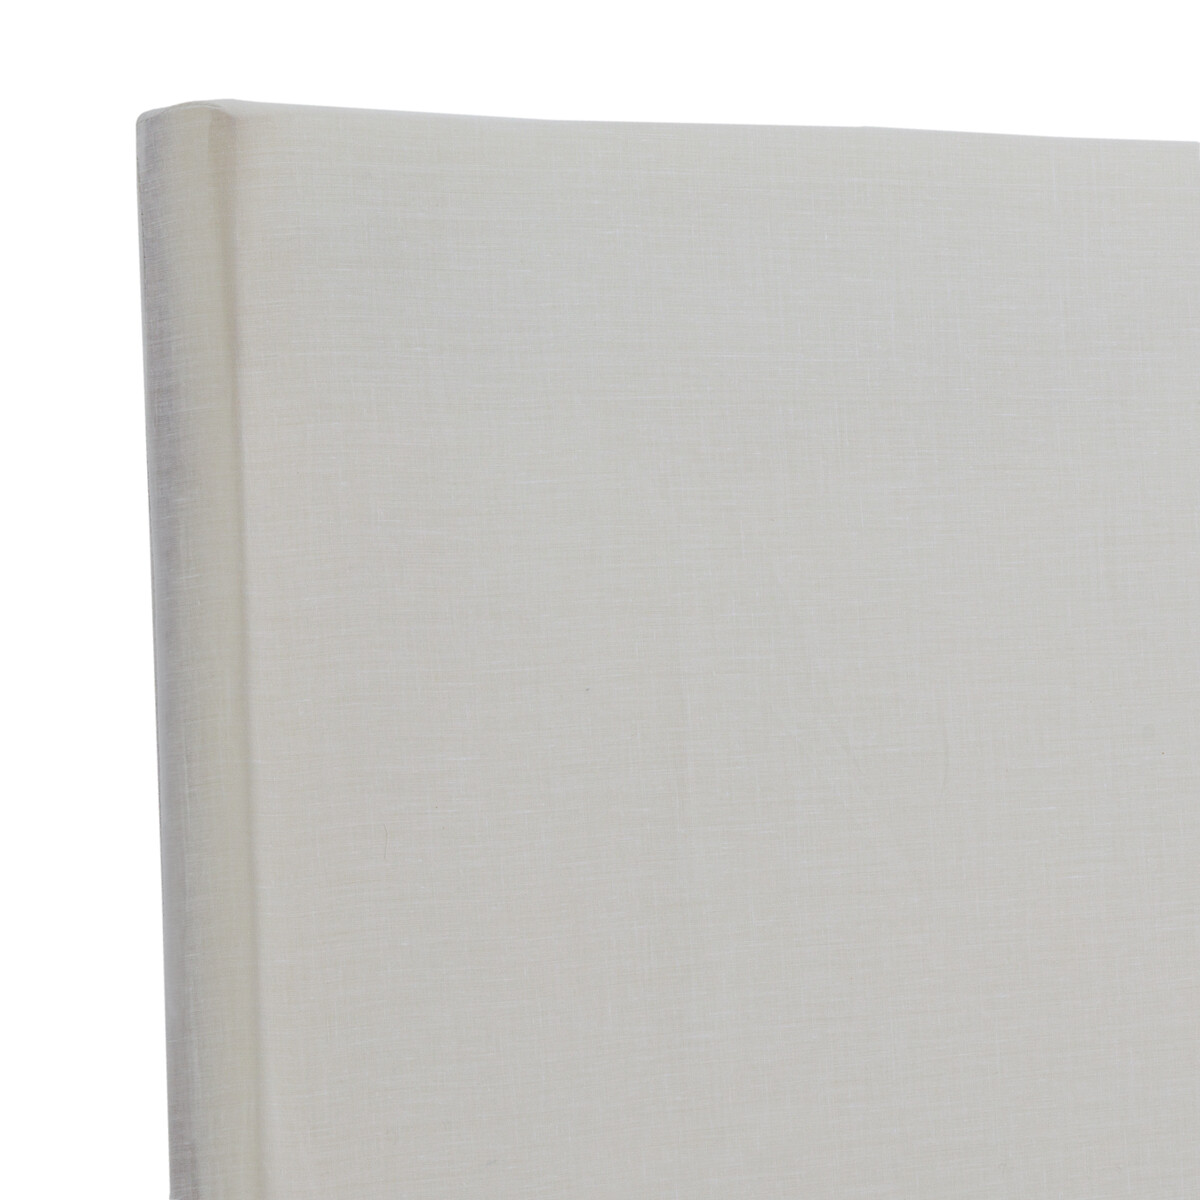 Изголовье Кроватное прямой формы Gatine 160 см белый LaRedoute, размер 160 см - фото 3